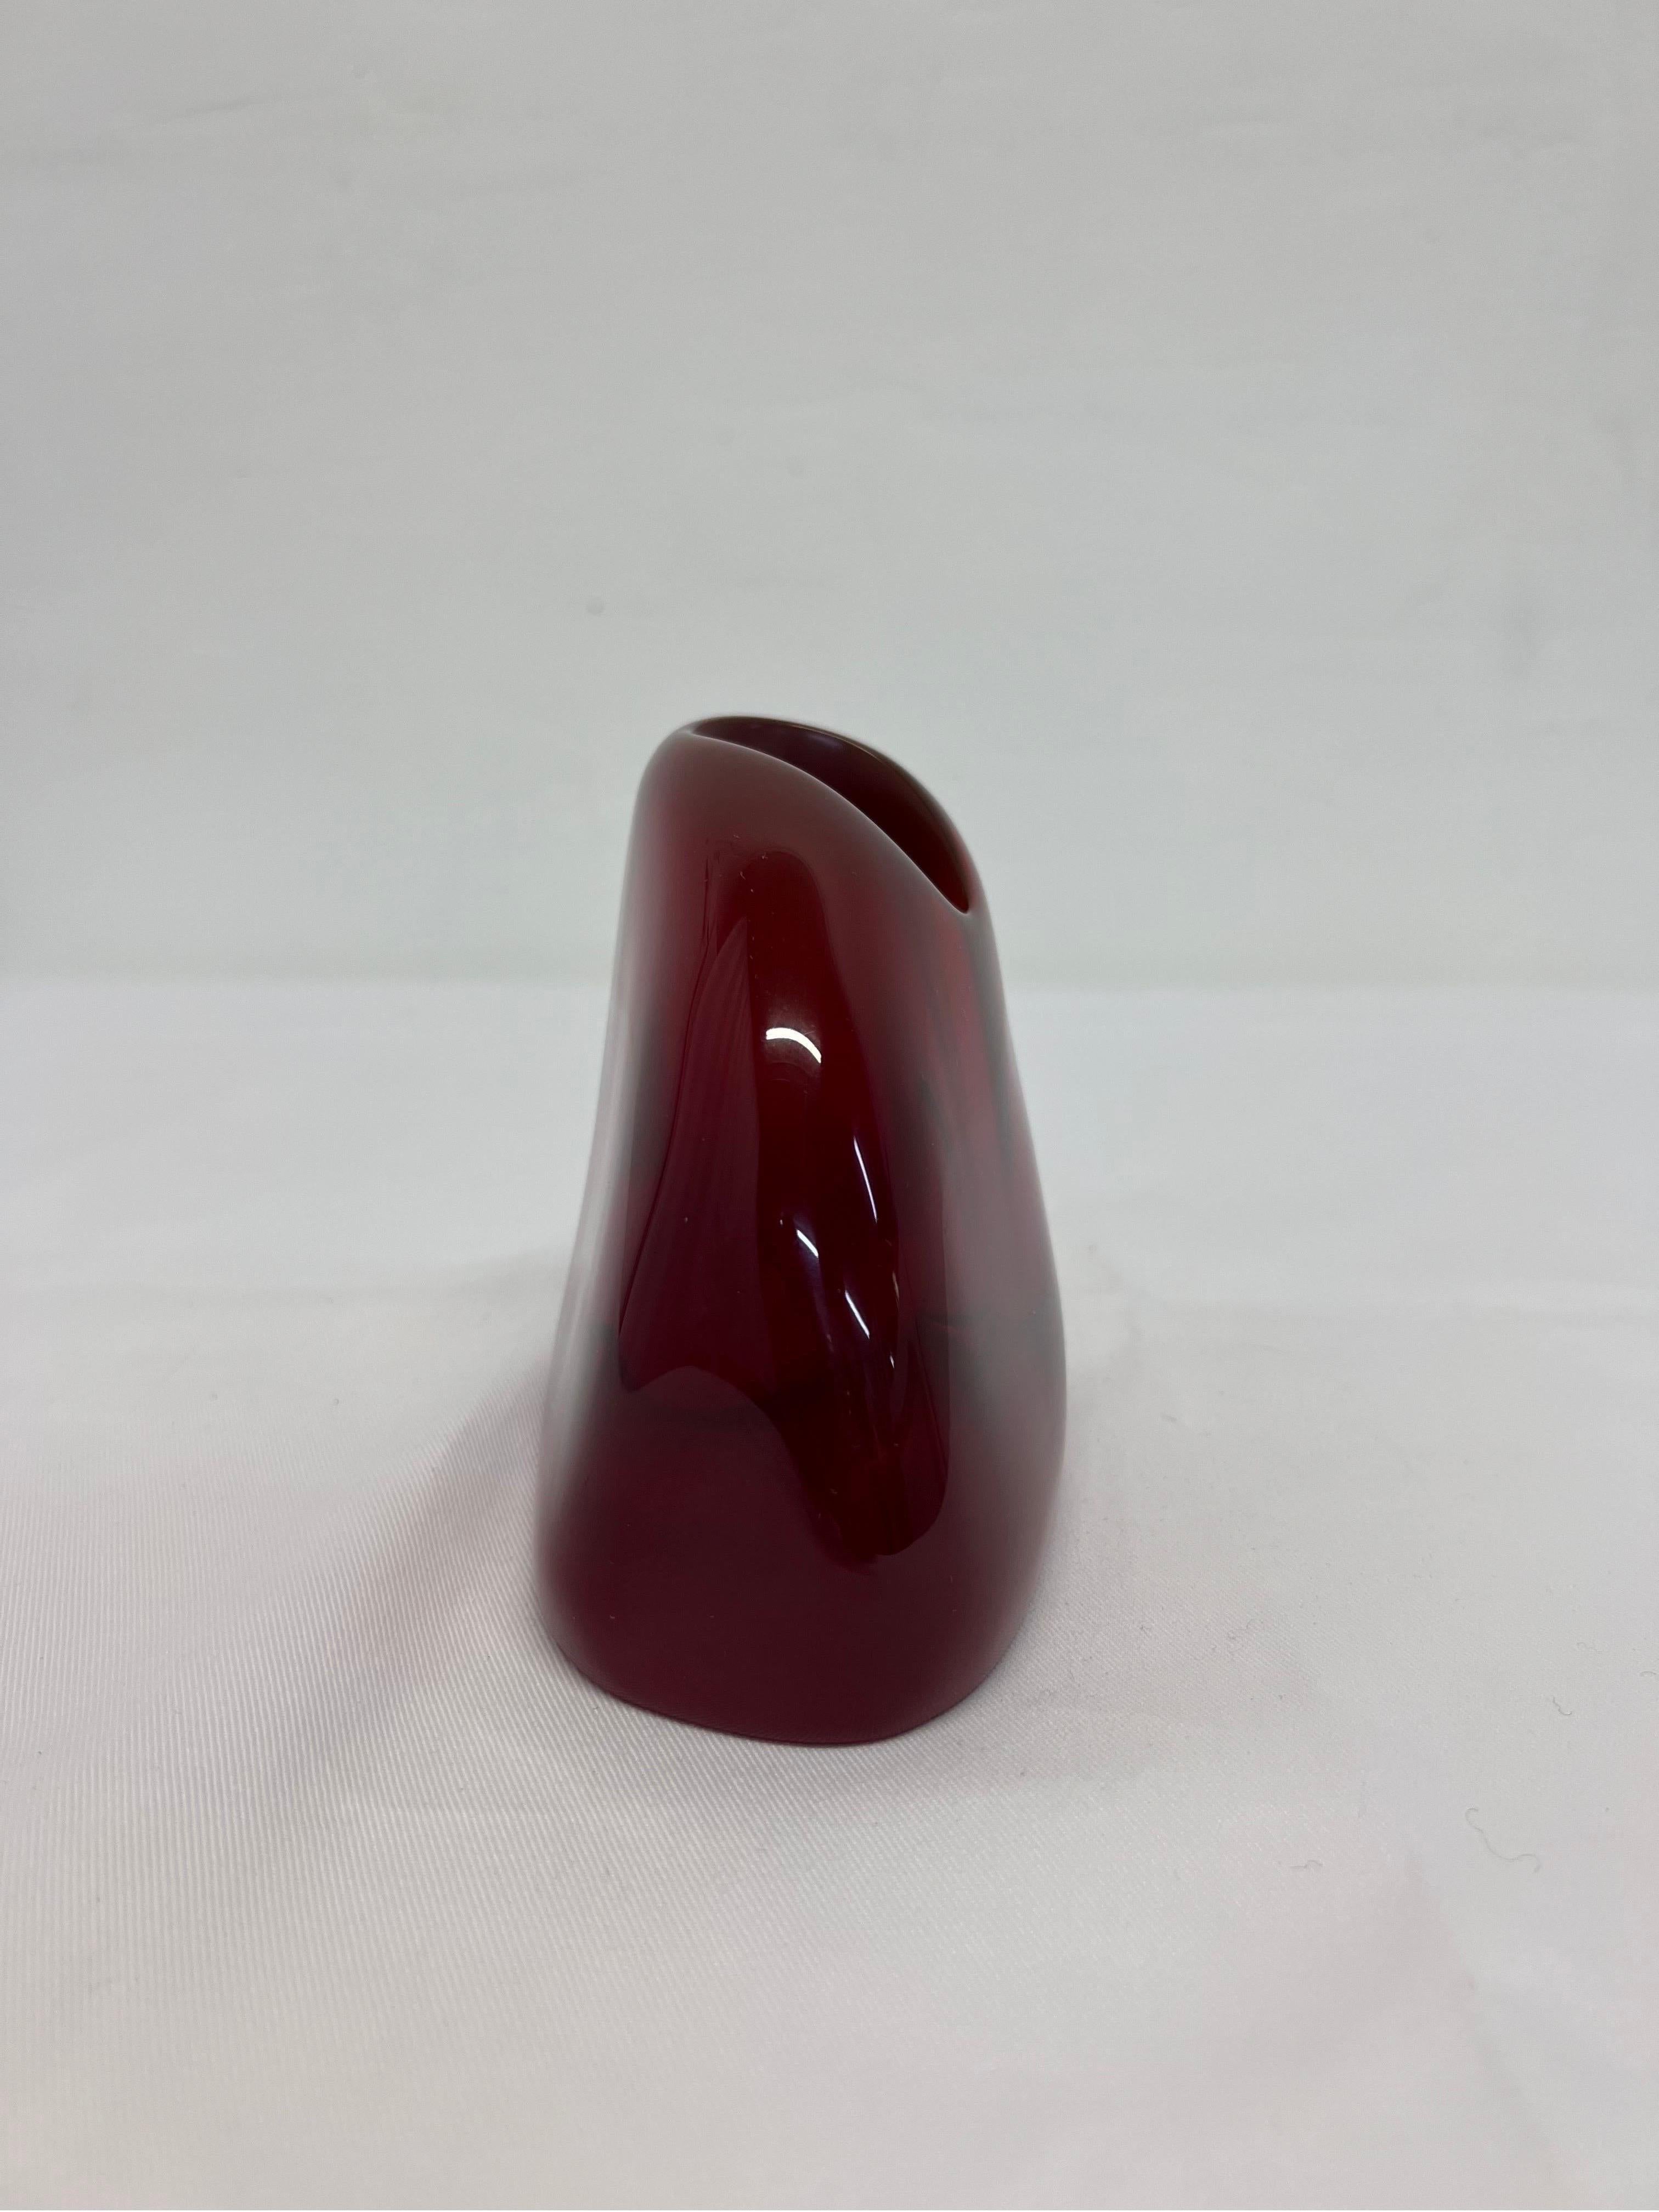 Brazilian Modern Translucent Red Resin Bud Vase, 1980s 3